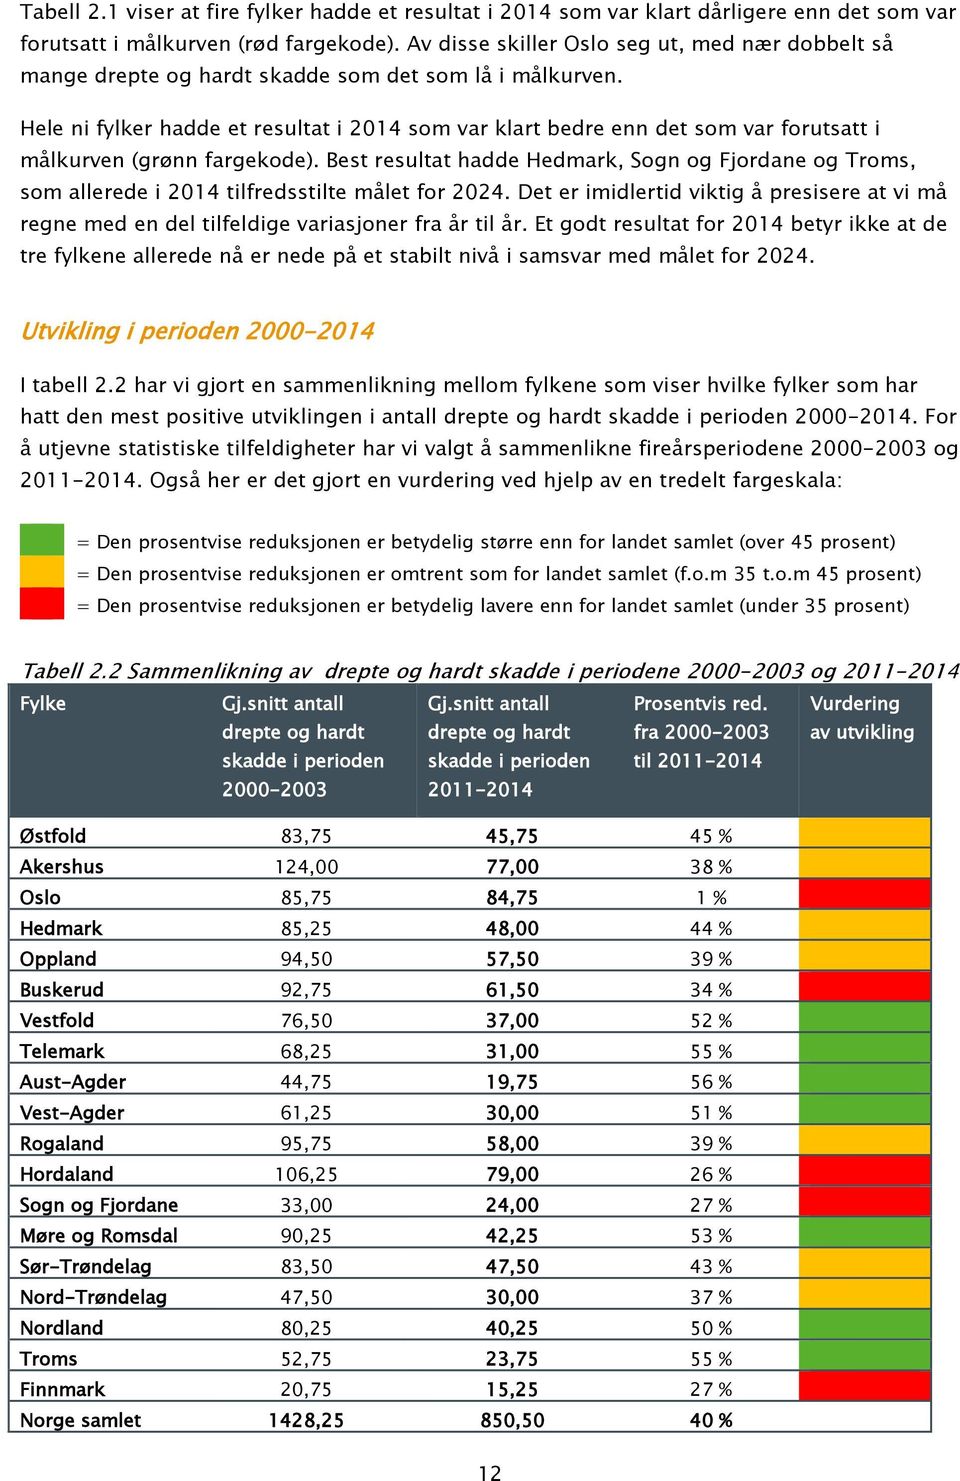 Hele ni fylker hadde et resultat i 2014 som var klart bedre enn det som var forutsatt i målkurven (grønn fargekode).